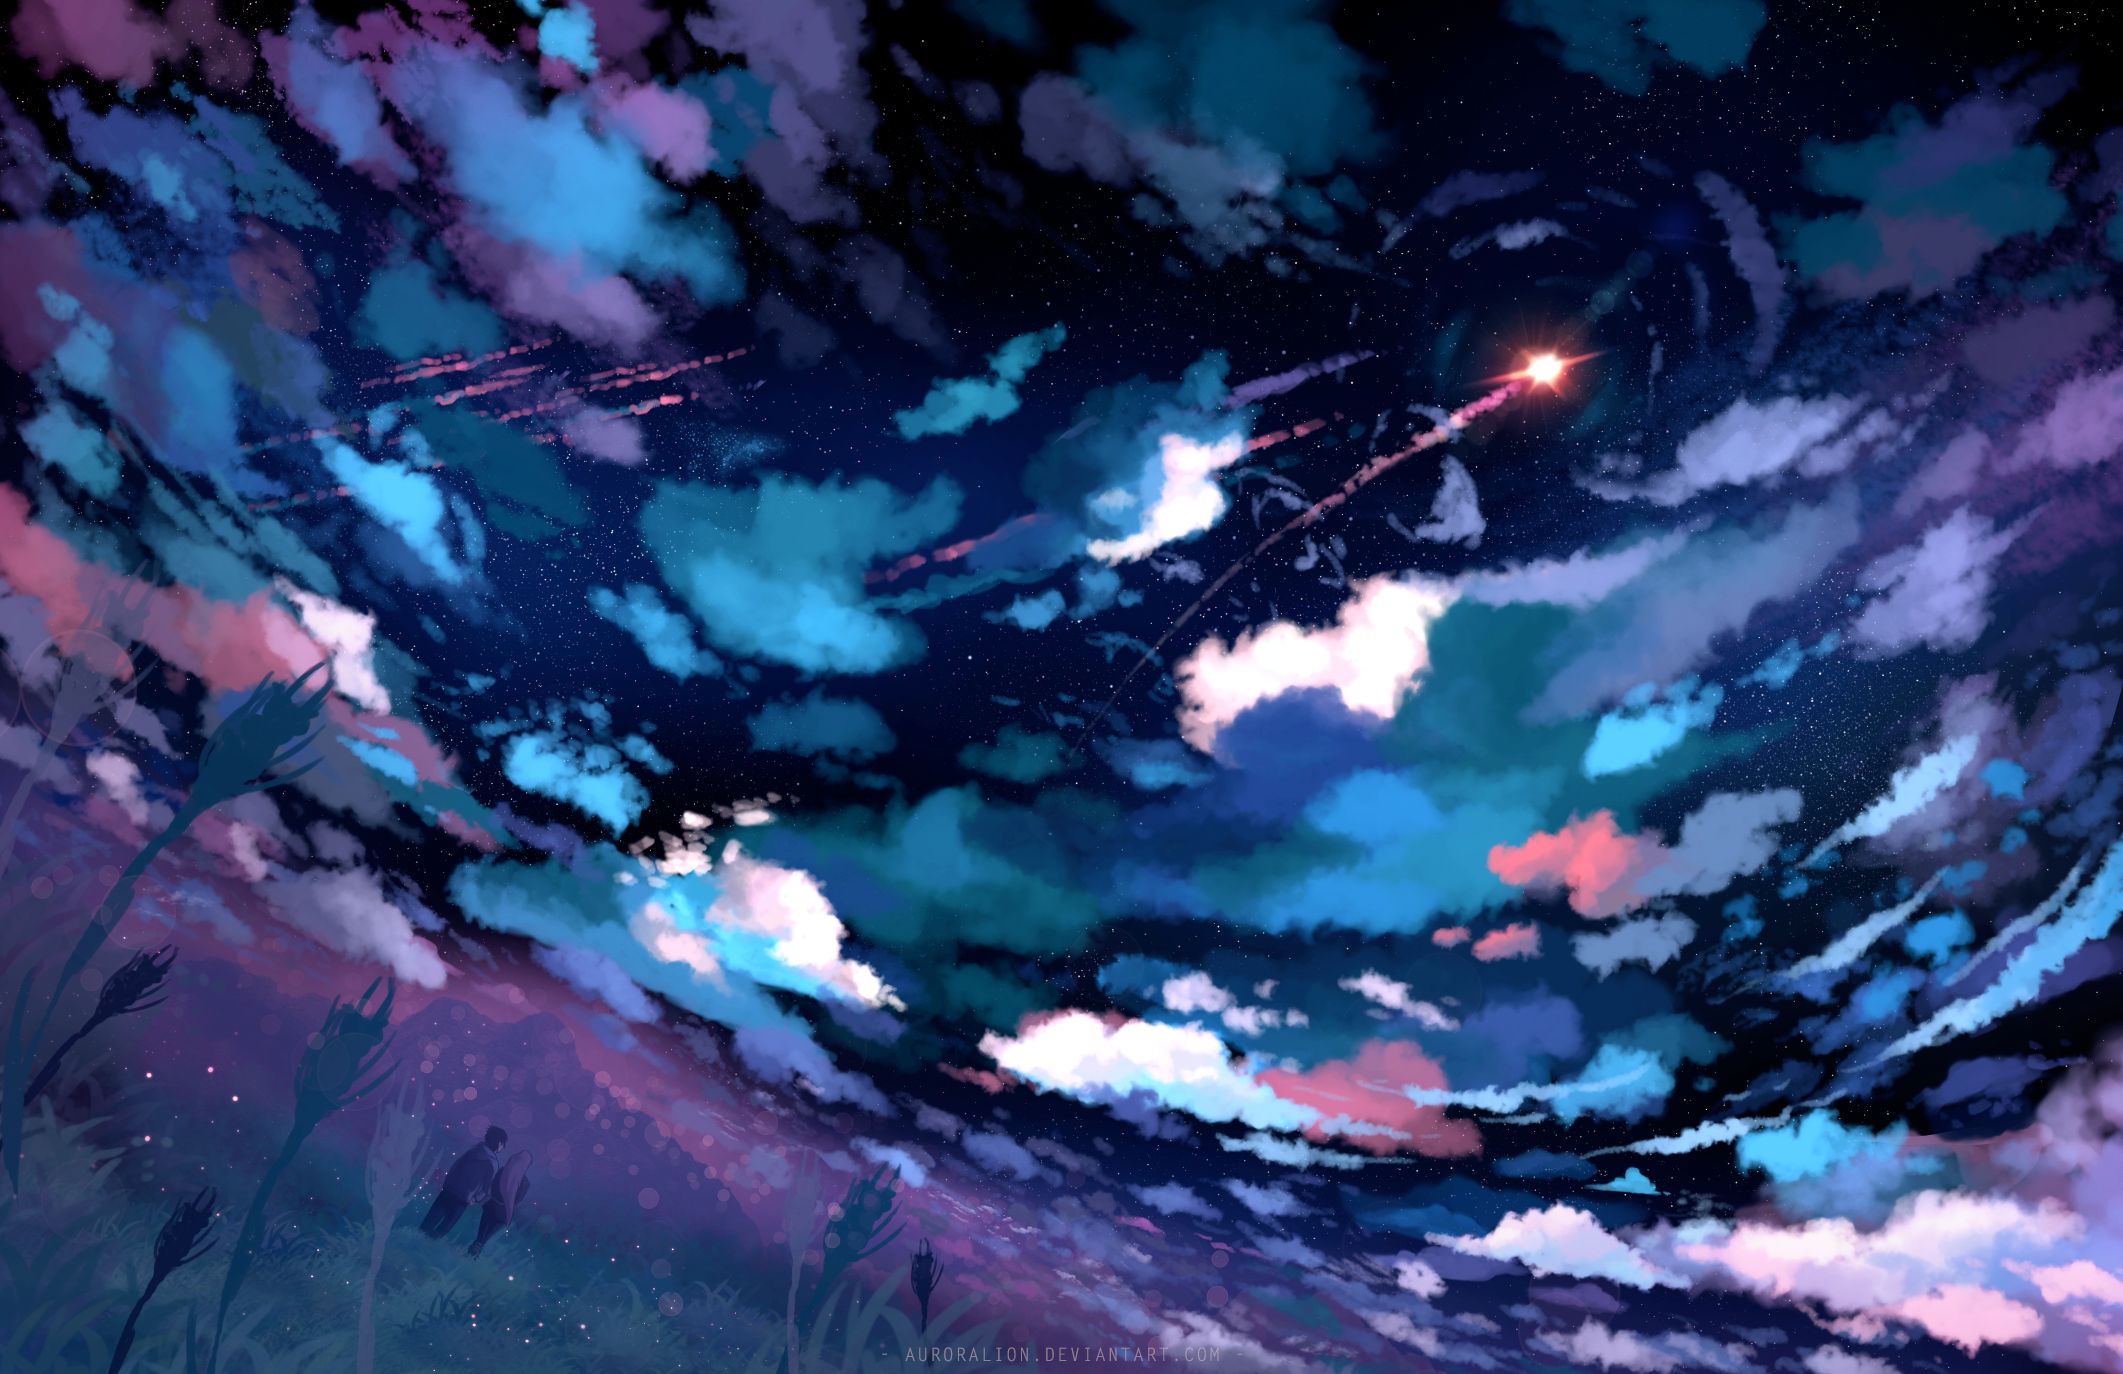 25 Anime Sky Wallpaper 1920x1080 - Cloud Blue Sky Anime Hd Wallpaper  Download Source : www.besthdwallpaper.com 192… | Sky anime, Anime  background, Cloud wallpaper